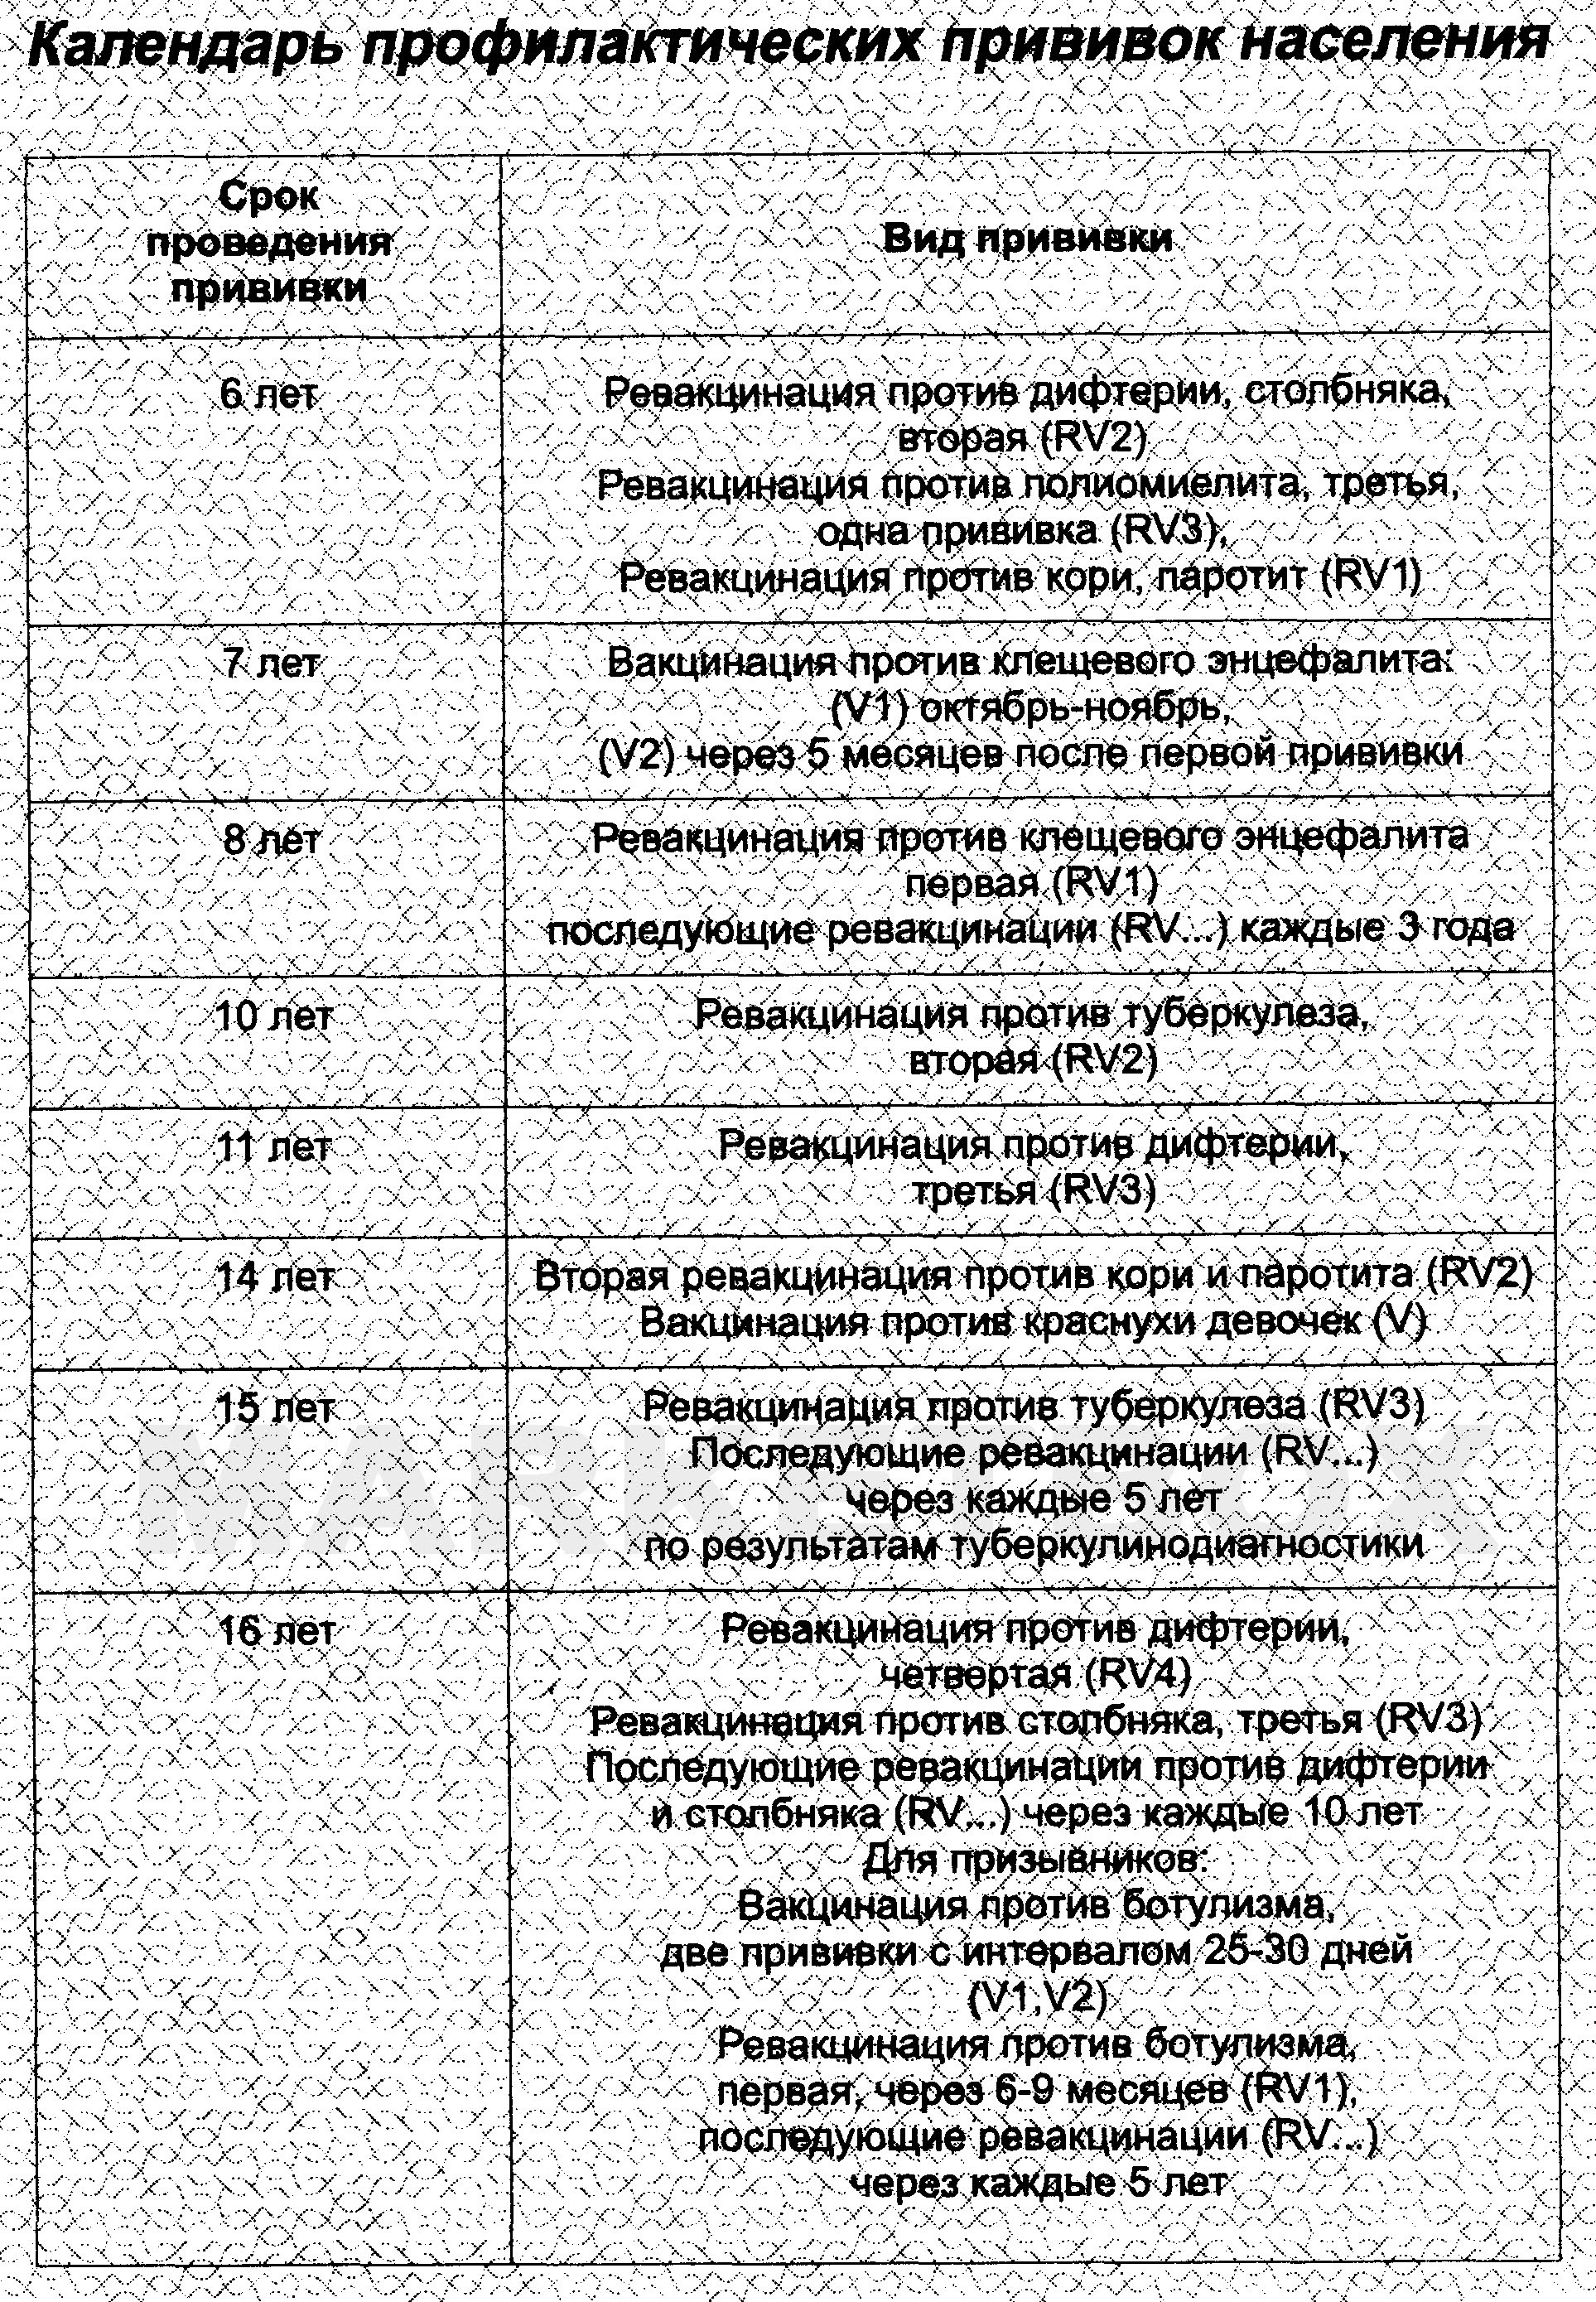 Сертификат о профилактических прививках форма №156/у-93